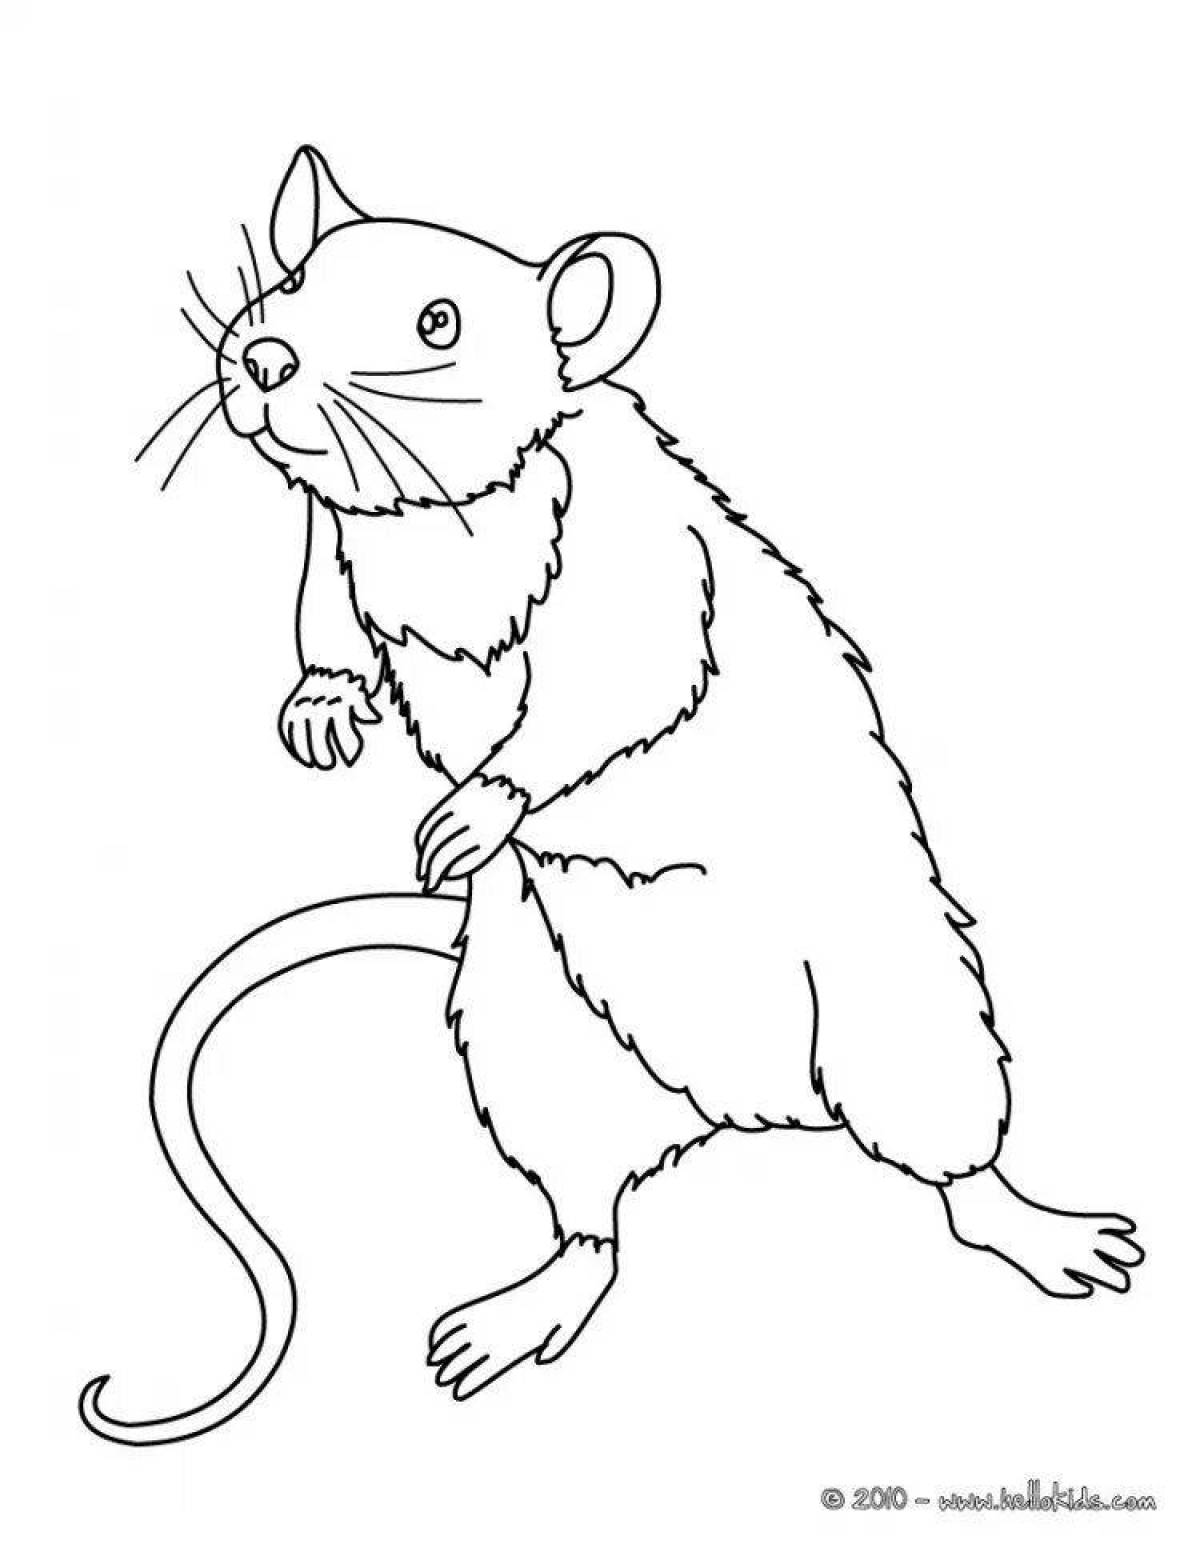 Fun rat coloring for kids